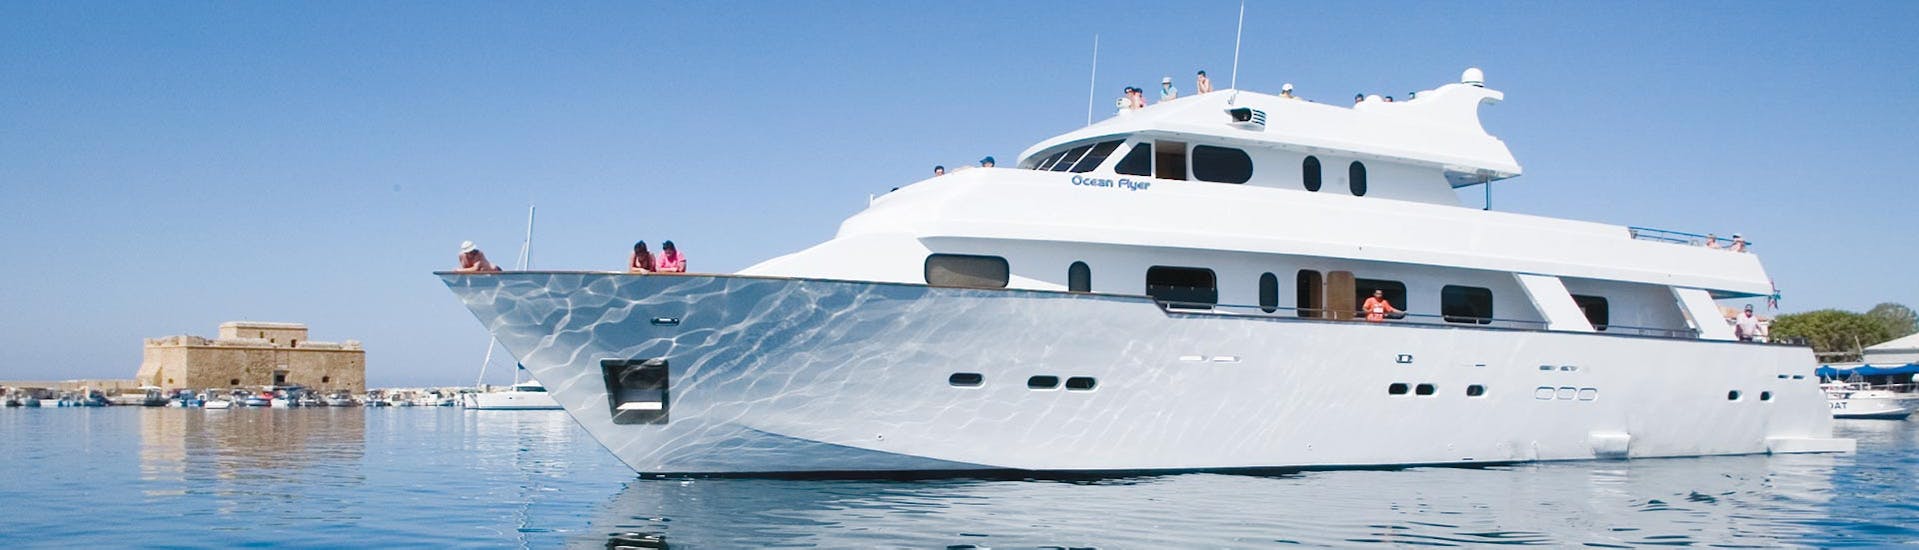 L'Ocean Flyer ancorato durante una gita in yacht di lusso a Coral Bay e alle grotte marine - Solo adulti con Paphos Sea Cruises.